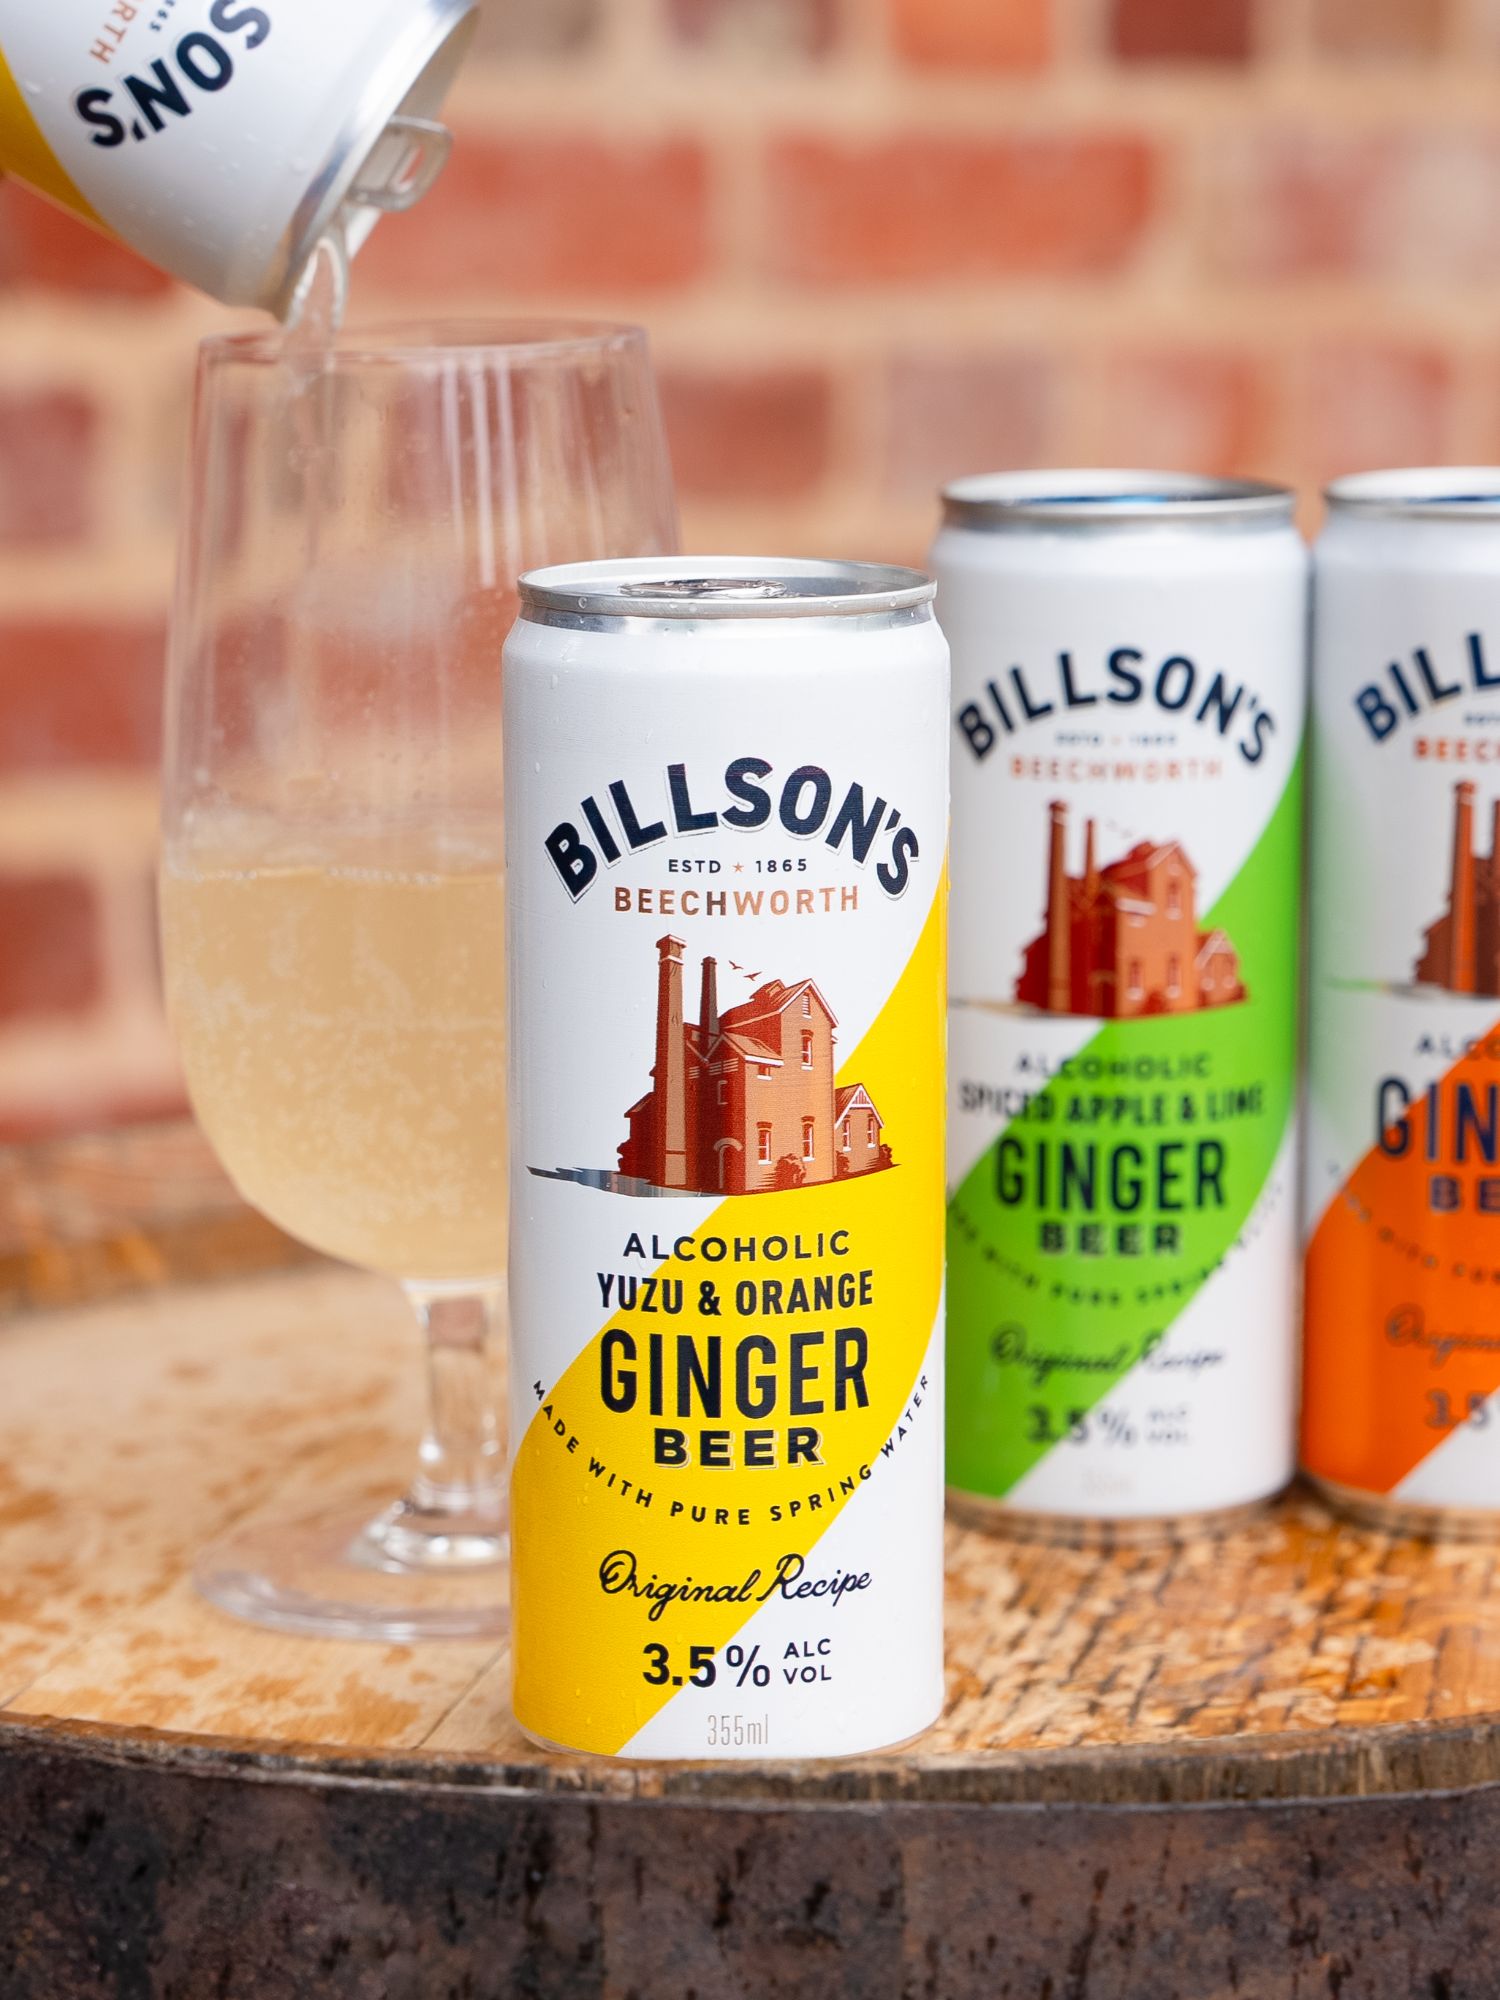 Billson's Ginger Beer with Yuzu & Orange